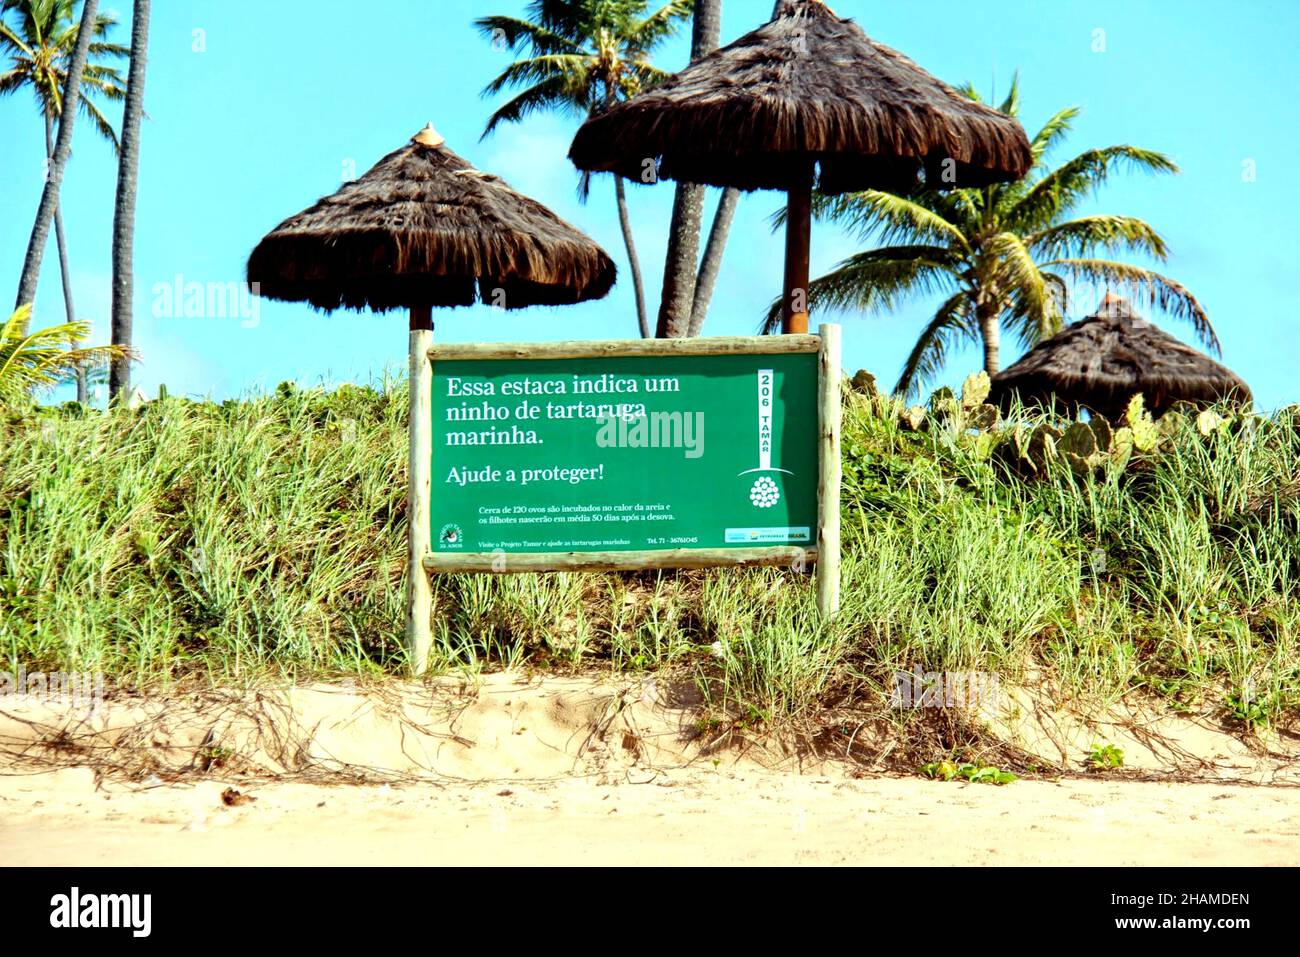 Tamar Projekt: Touristische Aufklärungstafel. Schildkröten Laichgebiet. Das Auftreten von künstlichem Licht führt zu einer Desorientierung der Schildkröten. Camaçari- Bahia- Brasilien Stockfoto